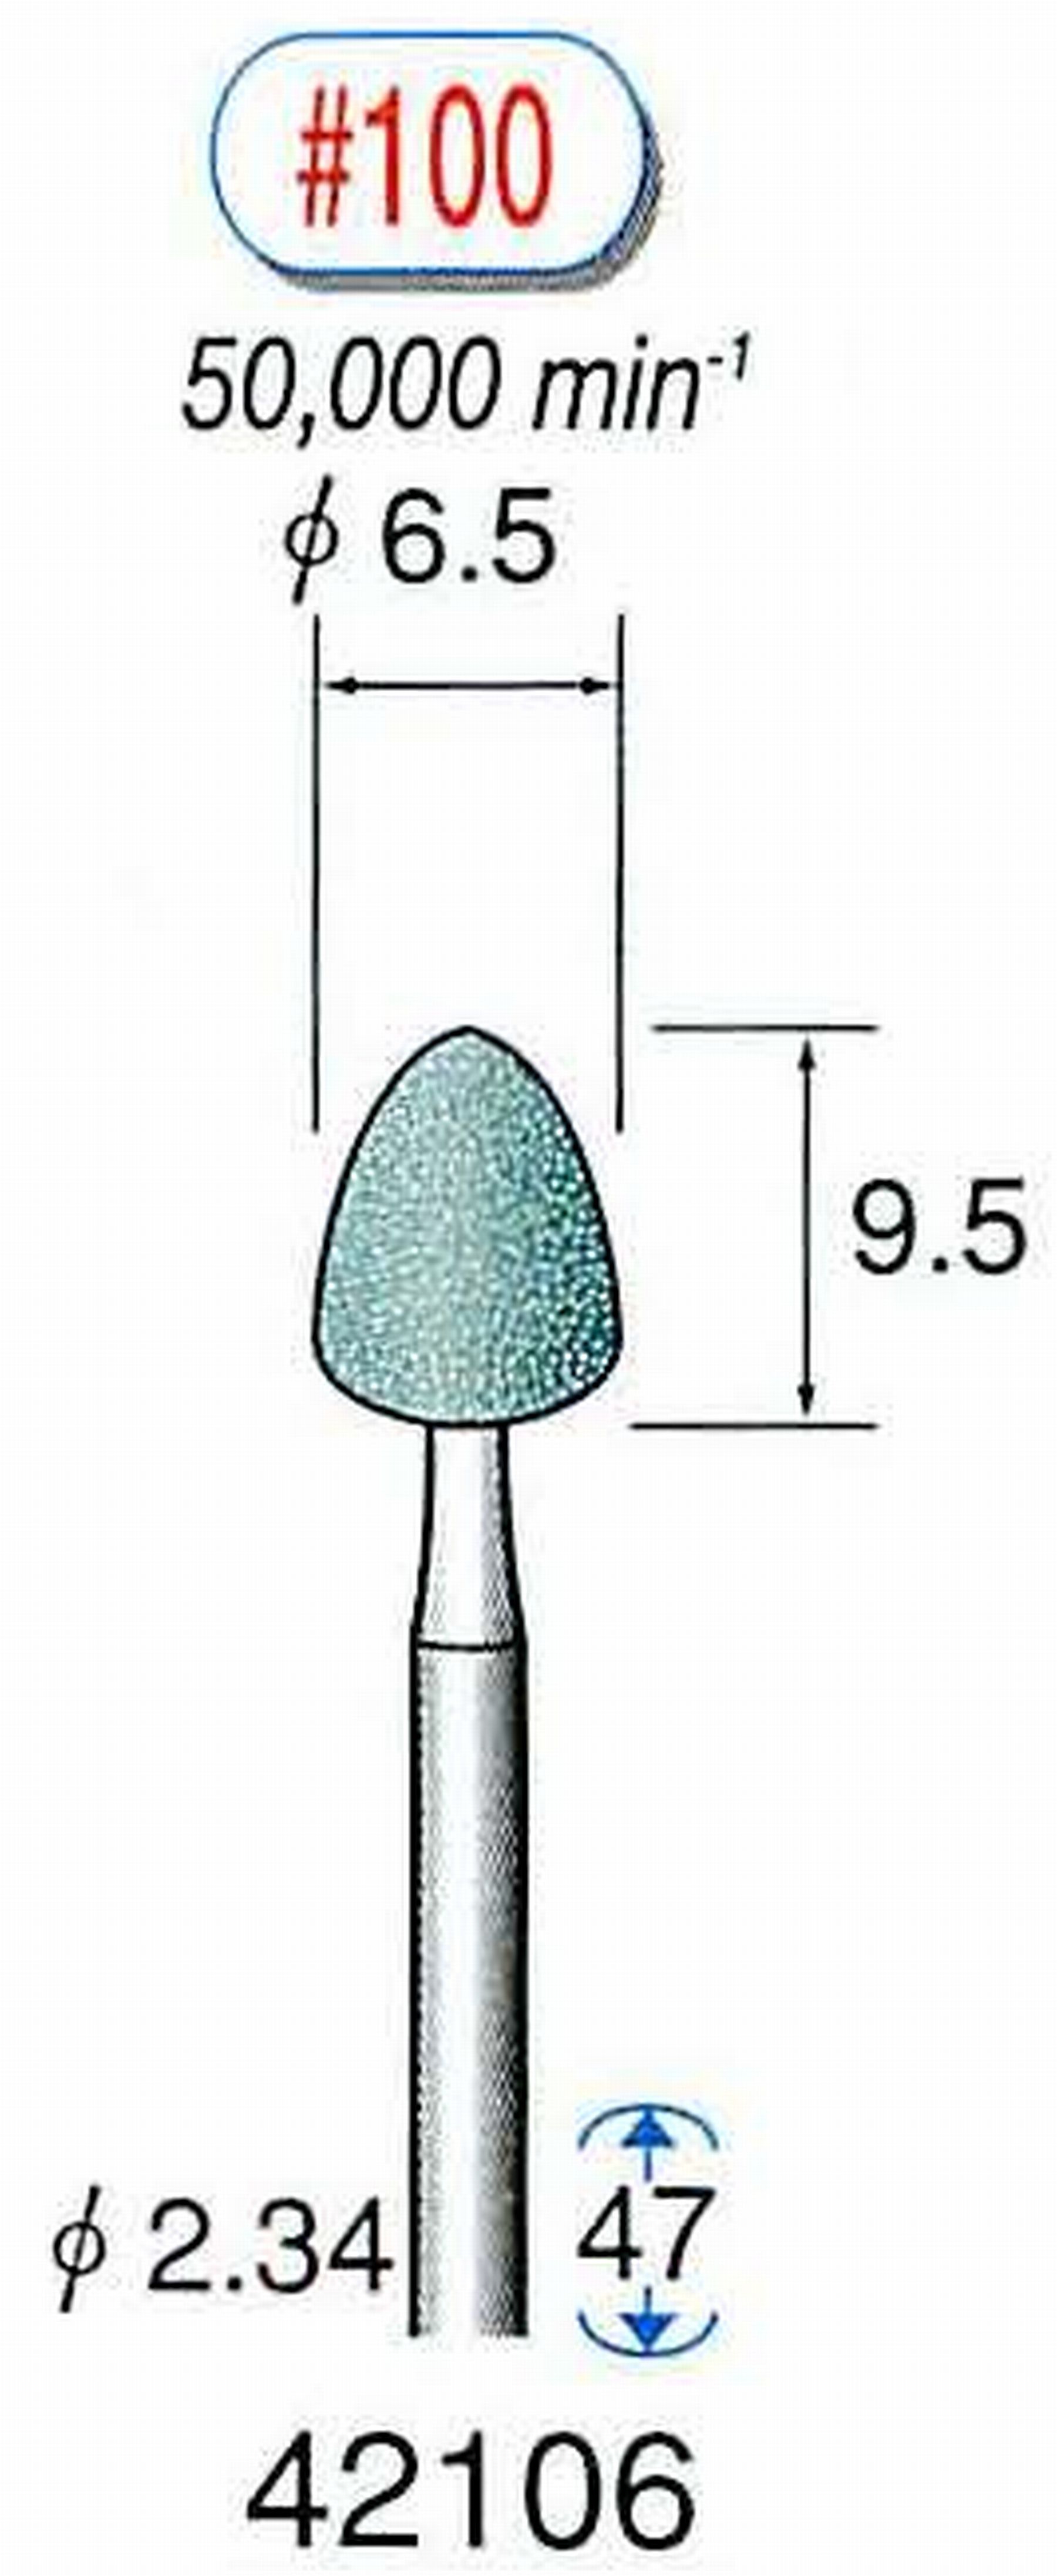 ナカニシ/NAKANISHI 軸付砥石(GC砥粒) 軸径(シャンク) φ2.34mm 42106